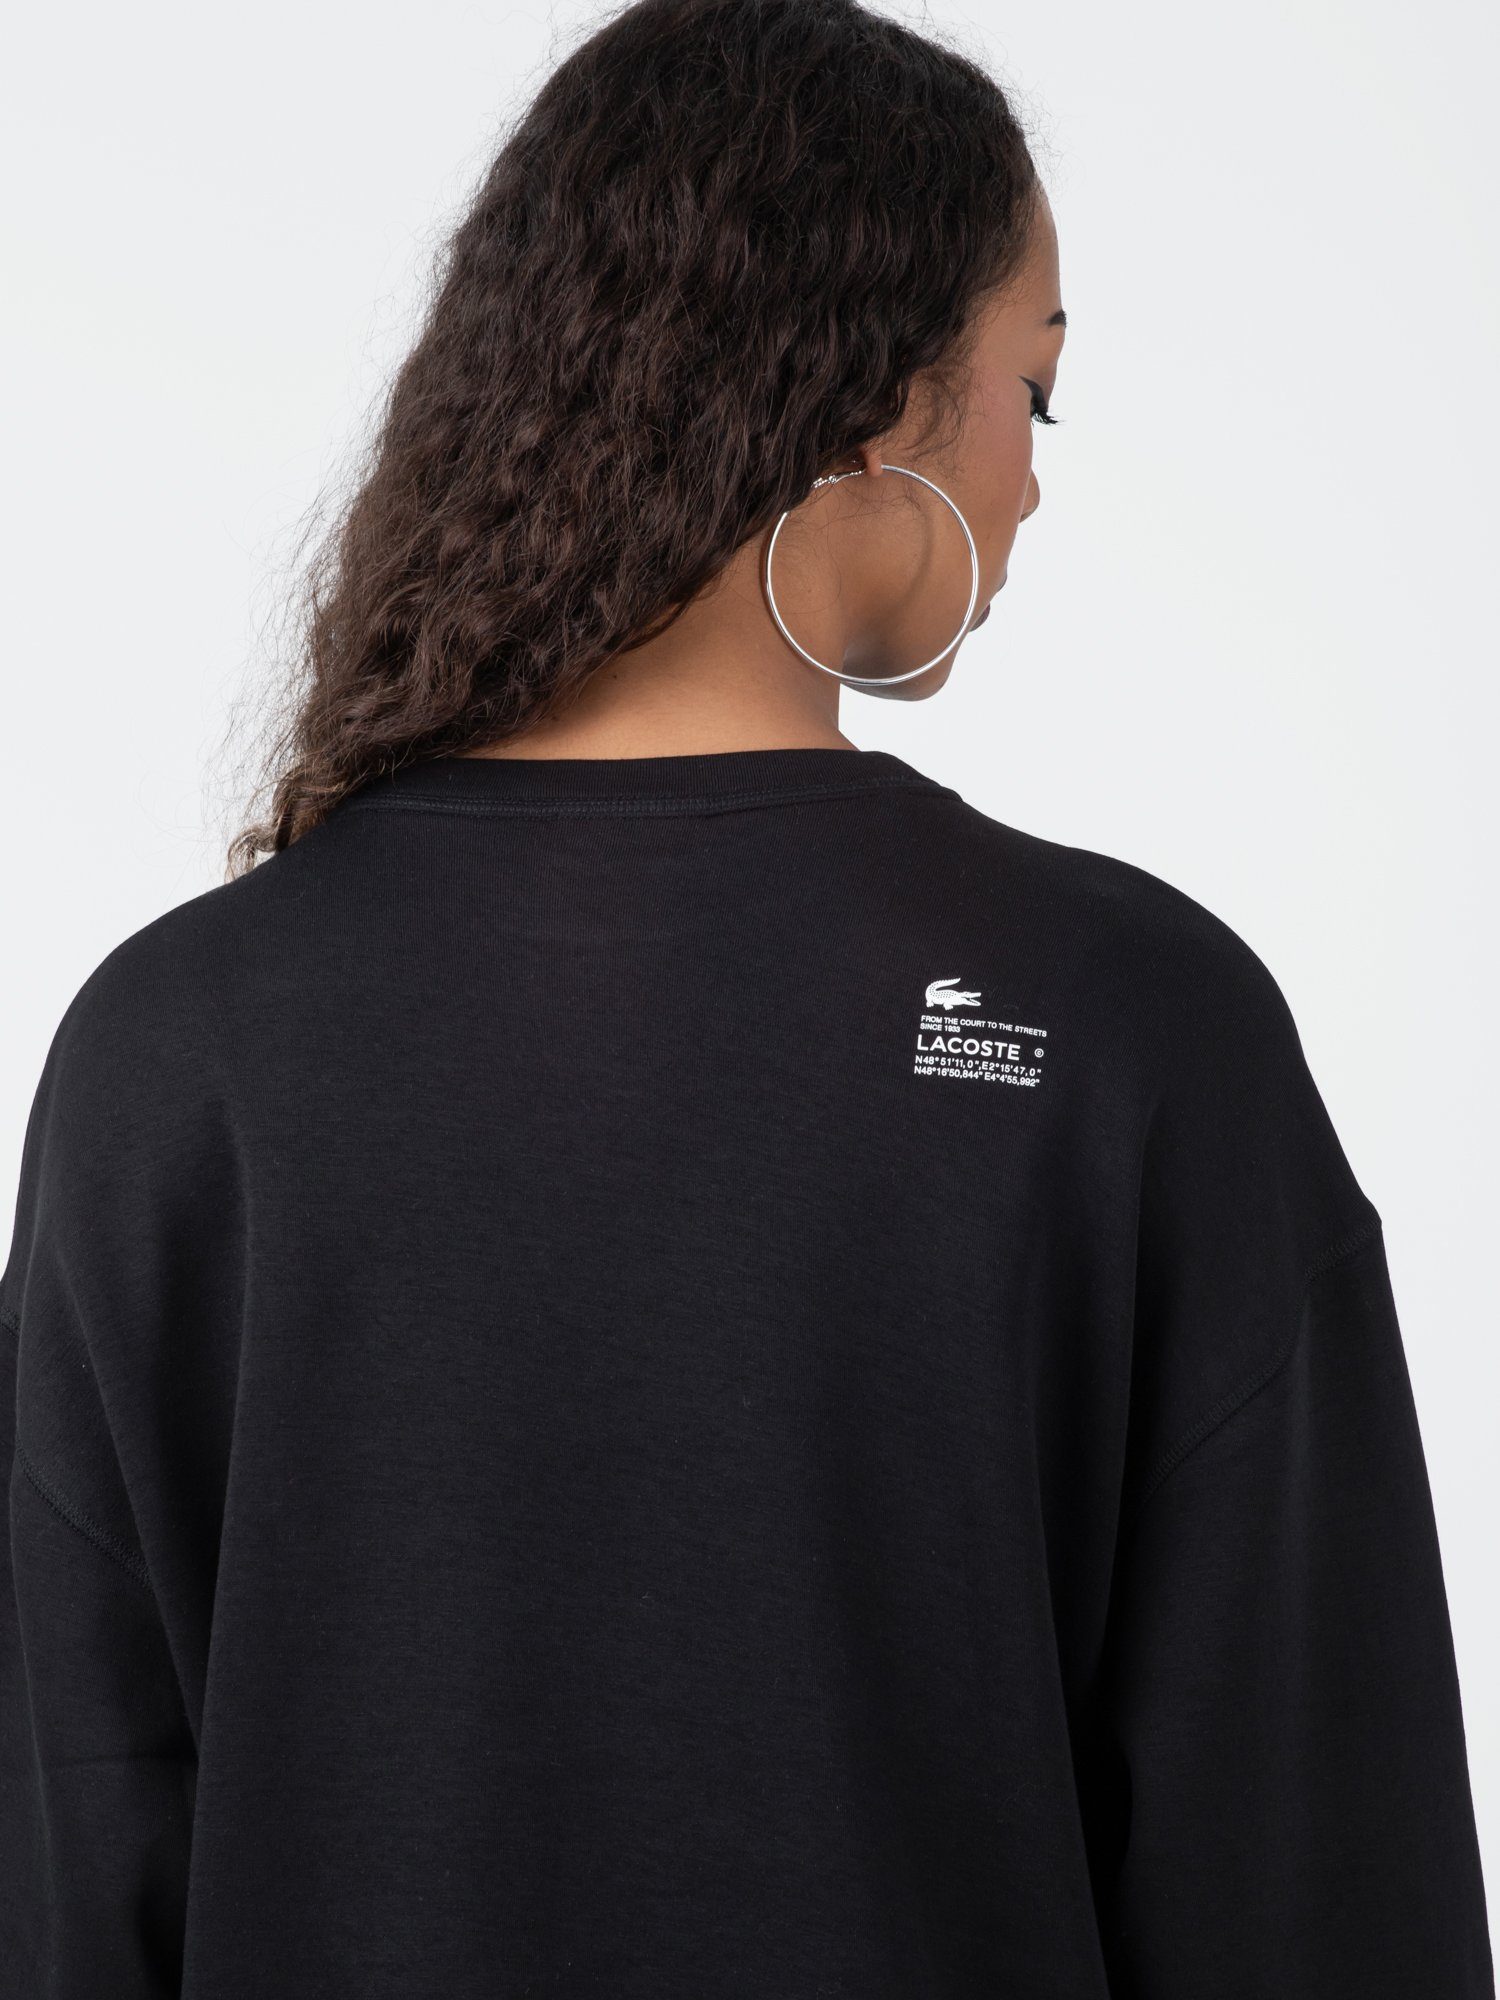 Lacoste Sweatshirt Lacoste Logo Sweater Jogger